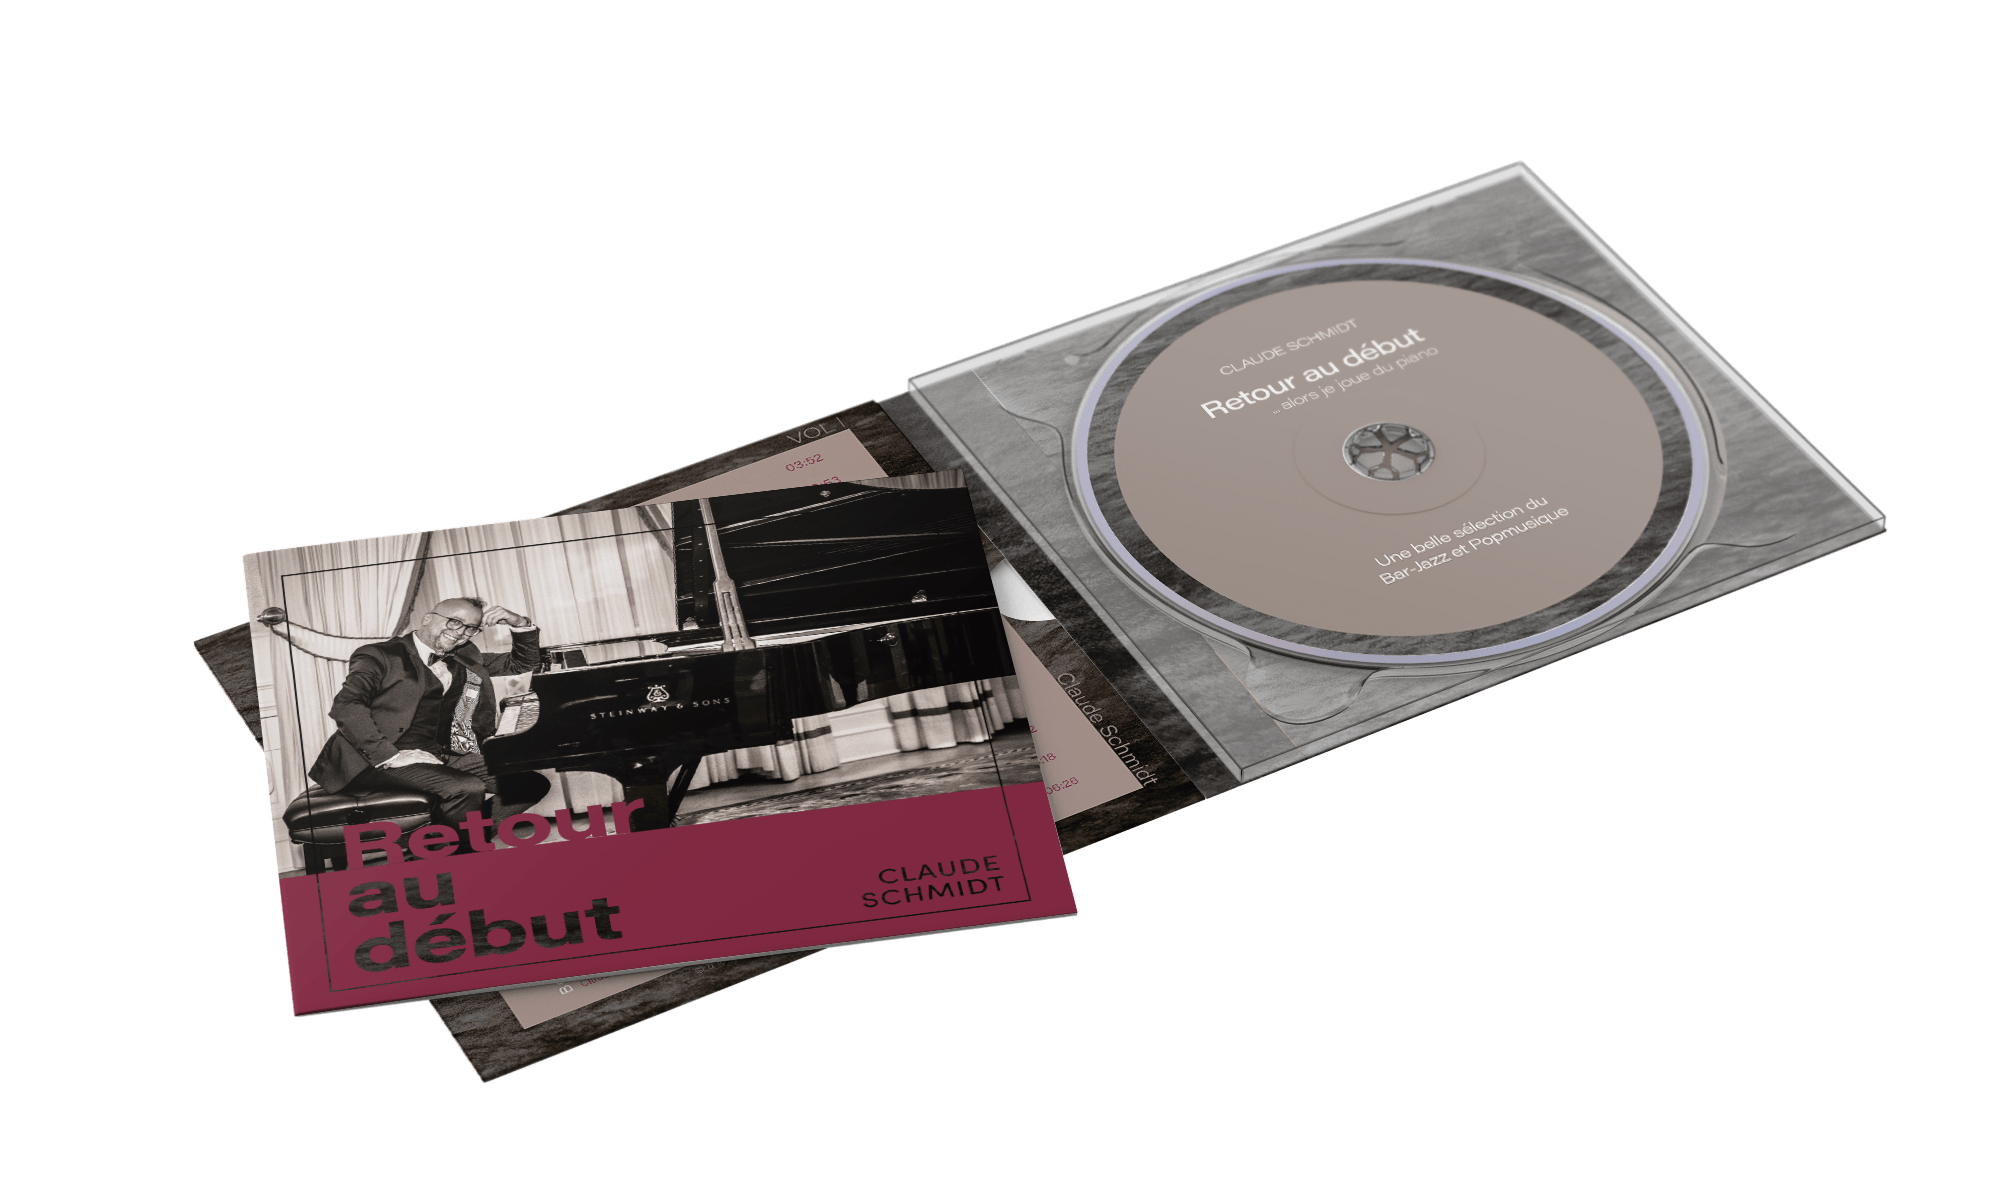 Bild von CD Replikation (Pressung) mit Labeldruck, Verpackung und Drucksachen